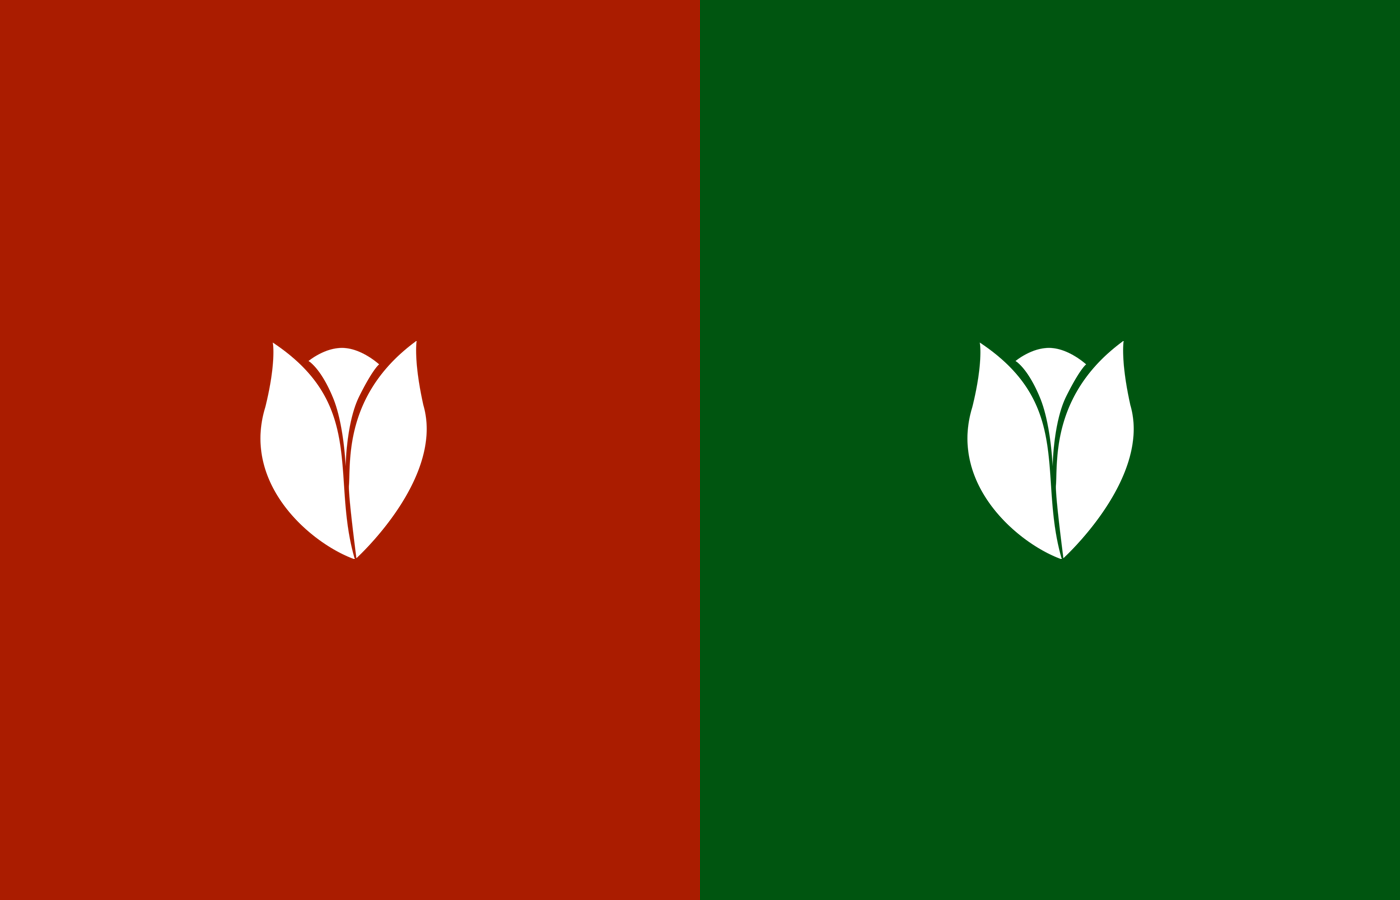 Variações do uso da logo nas cores.